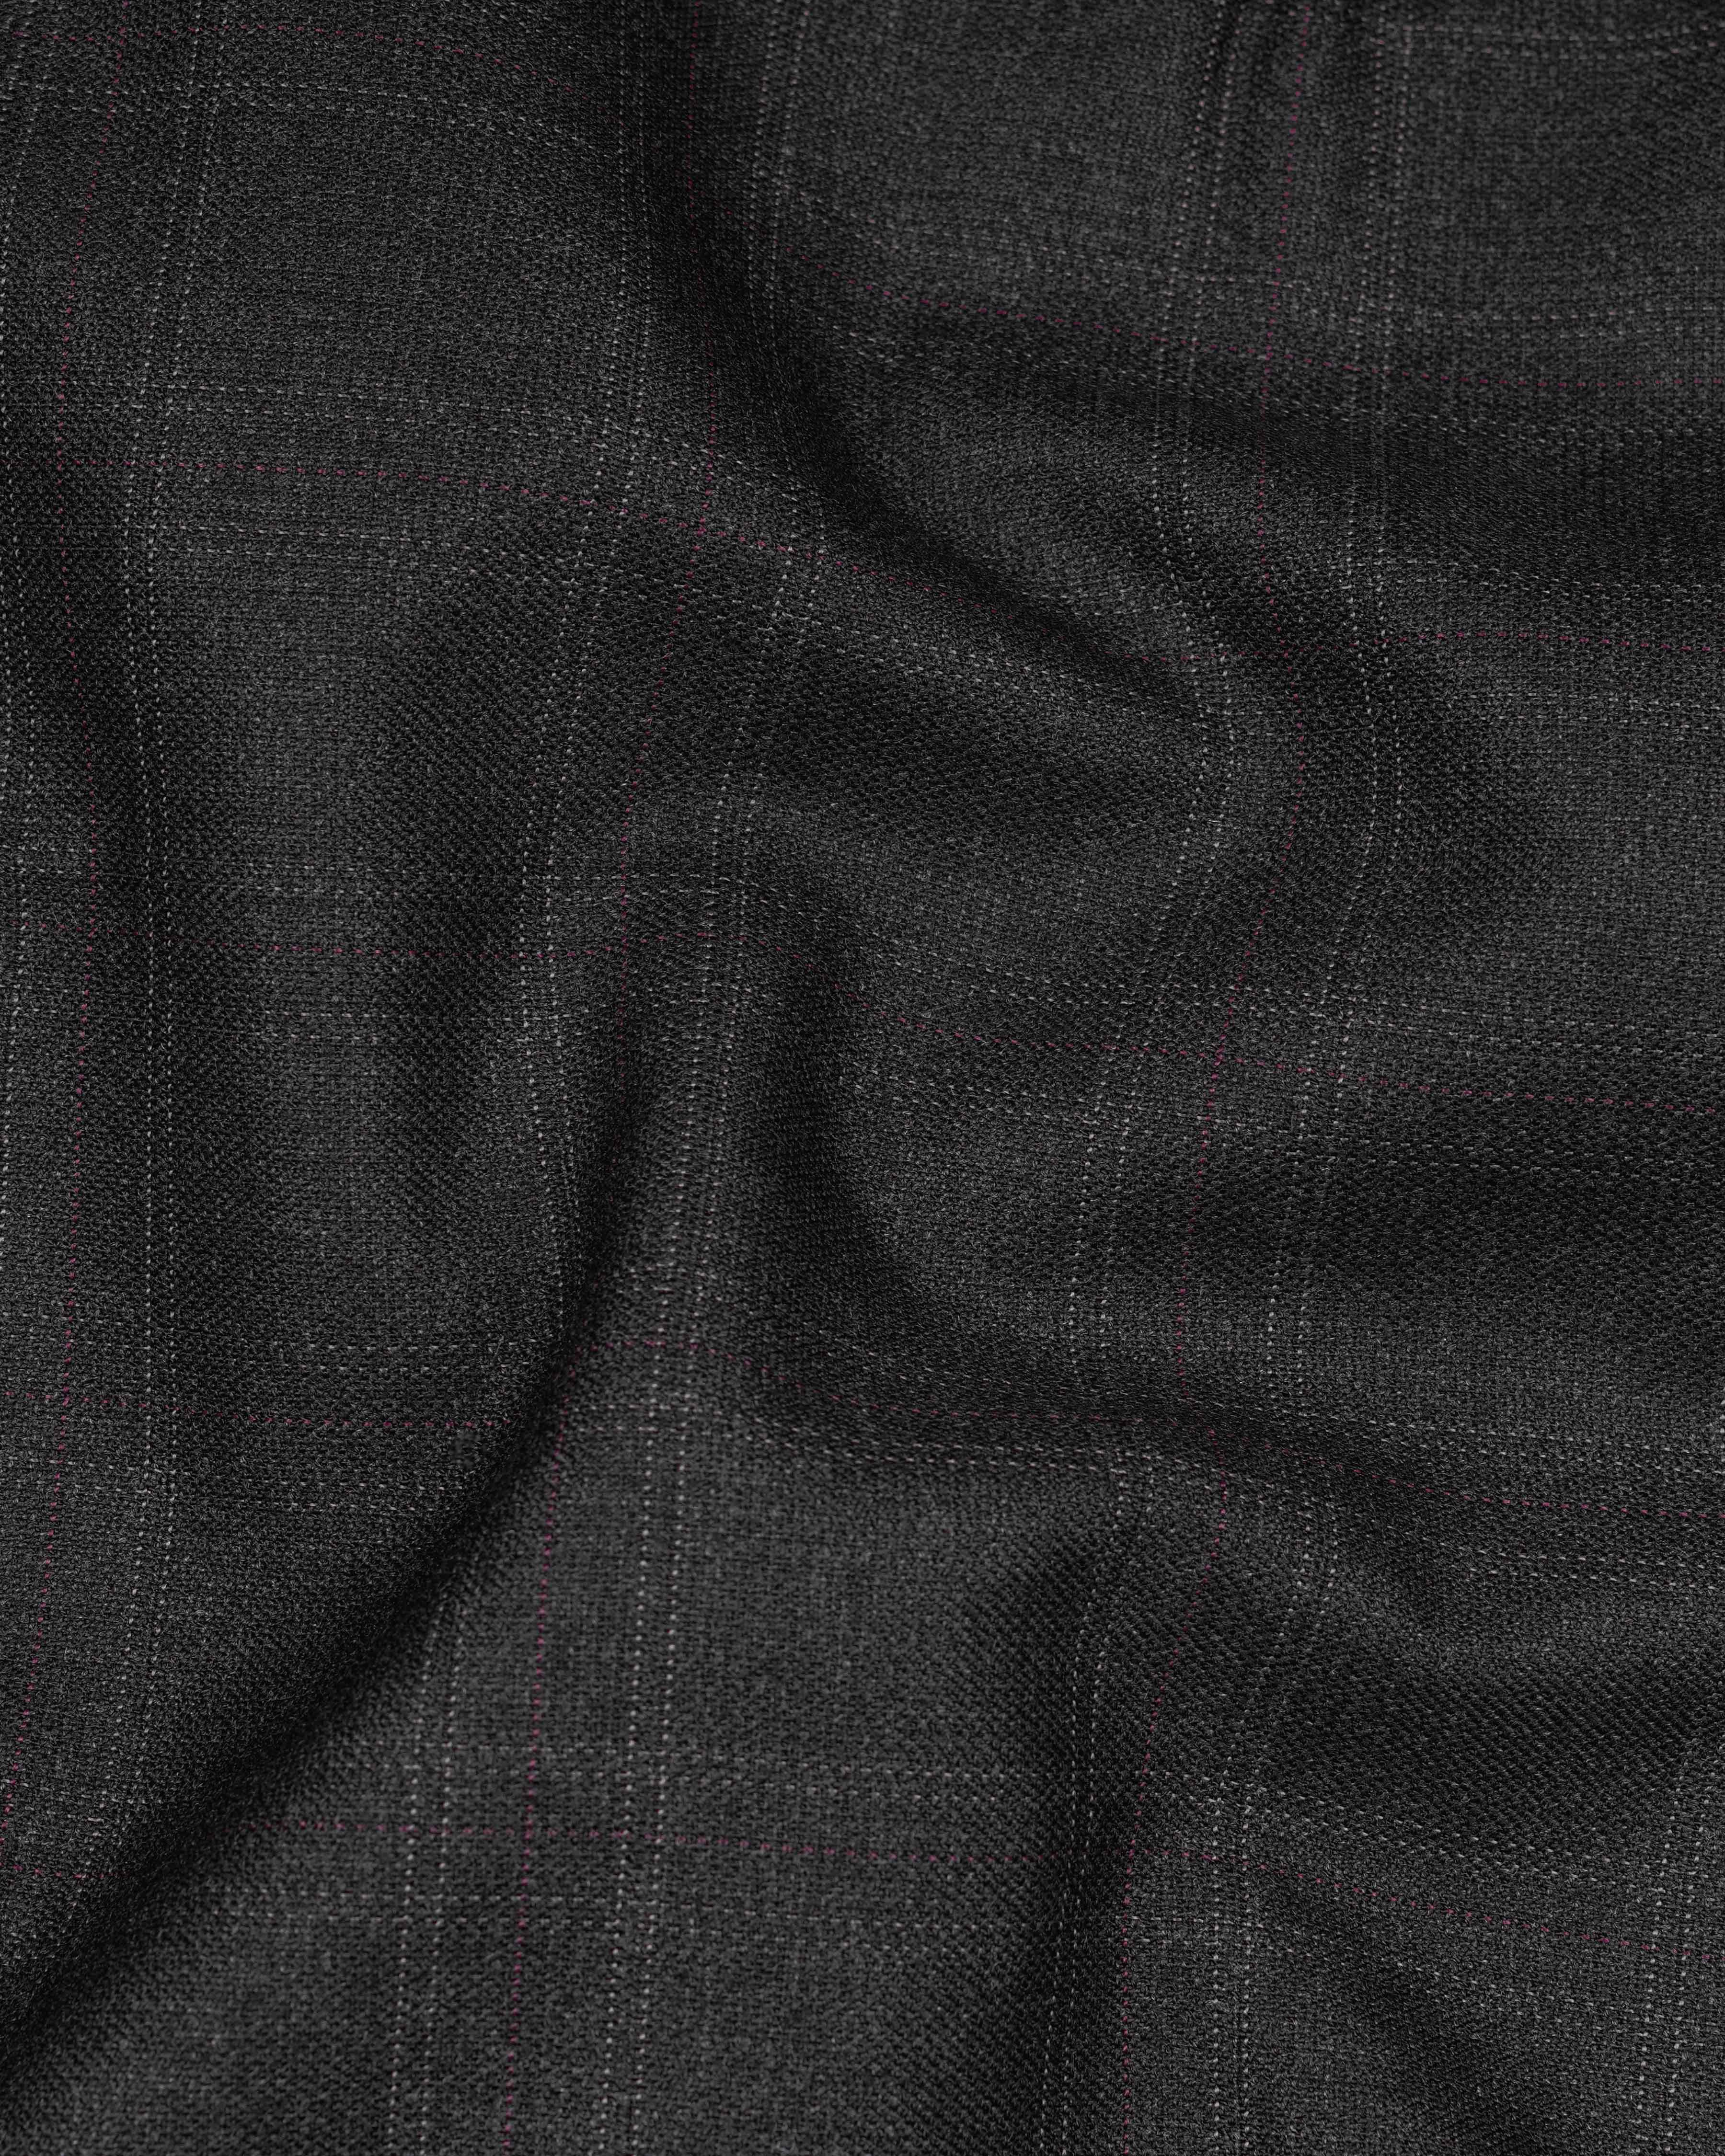 Nero Grey Subtle Plaid Waistcoat V2078-36, V2078-38, V2078-40, V2078-42, V2078-44, V2078-46, V2078-48, V2078-50, V2078-52, V2078-54, V2078-56, V2078-58, V2078-60